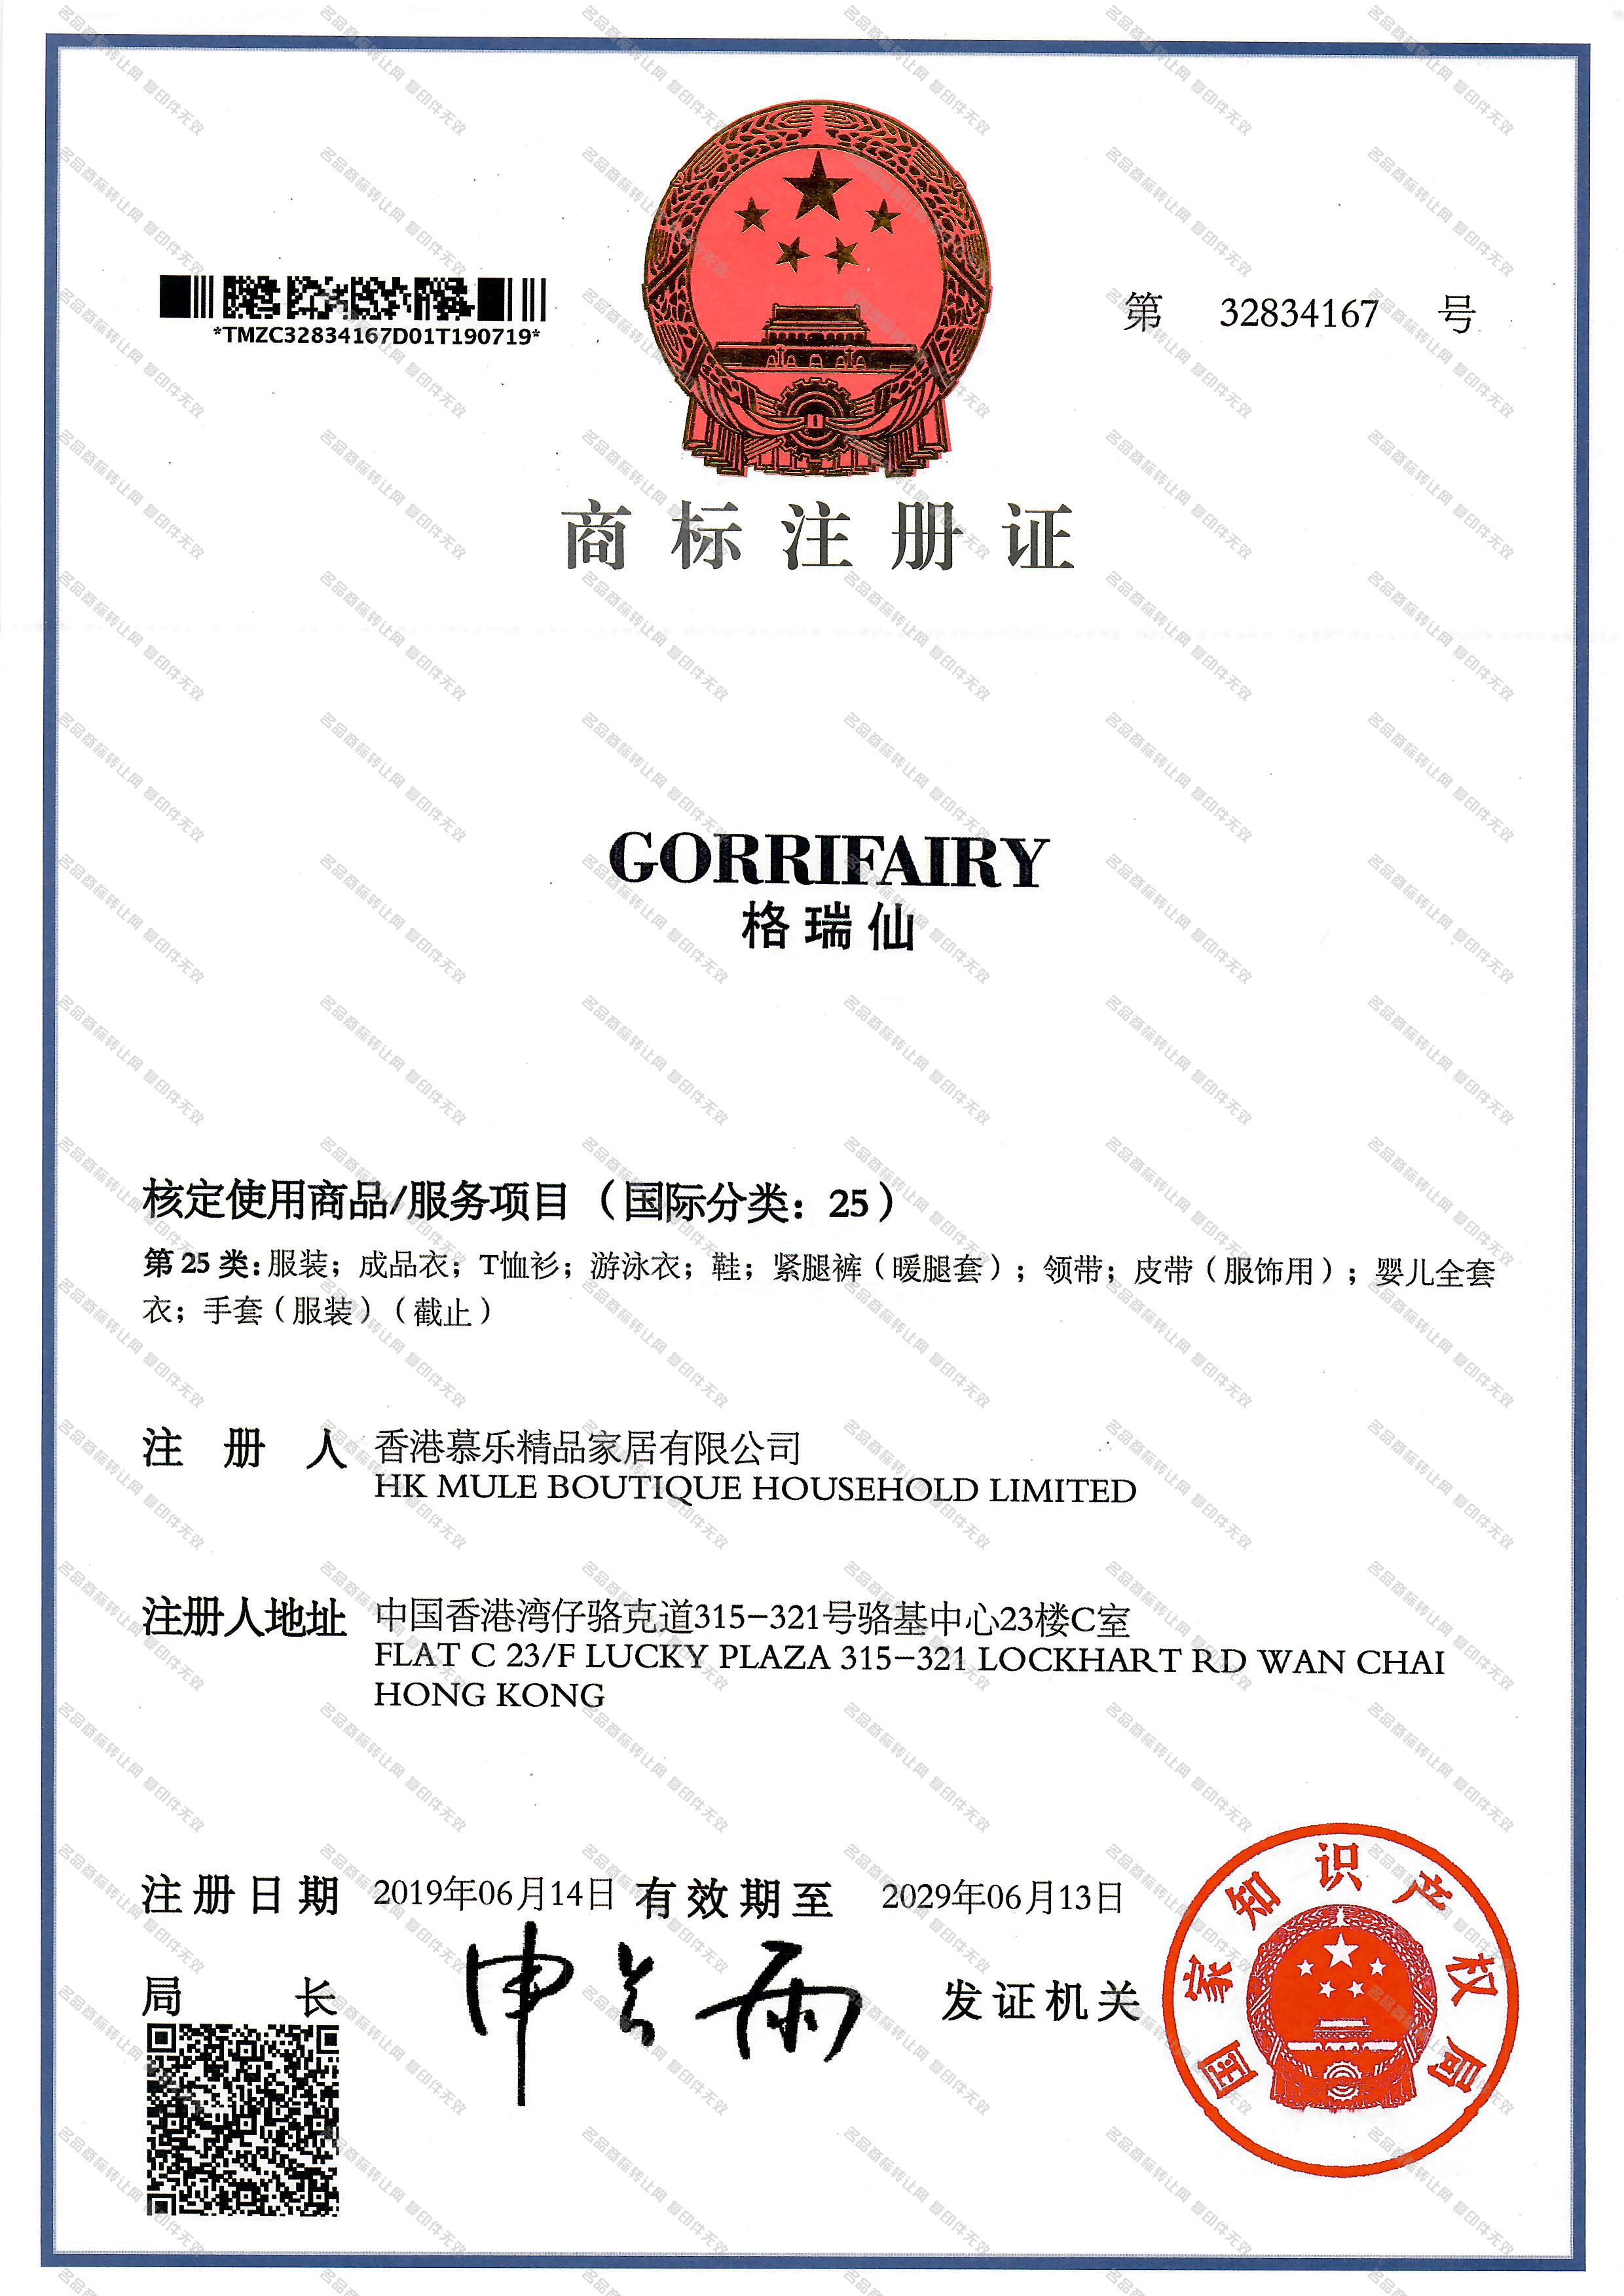 格瑞仙 GORRI FAIRY注册证